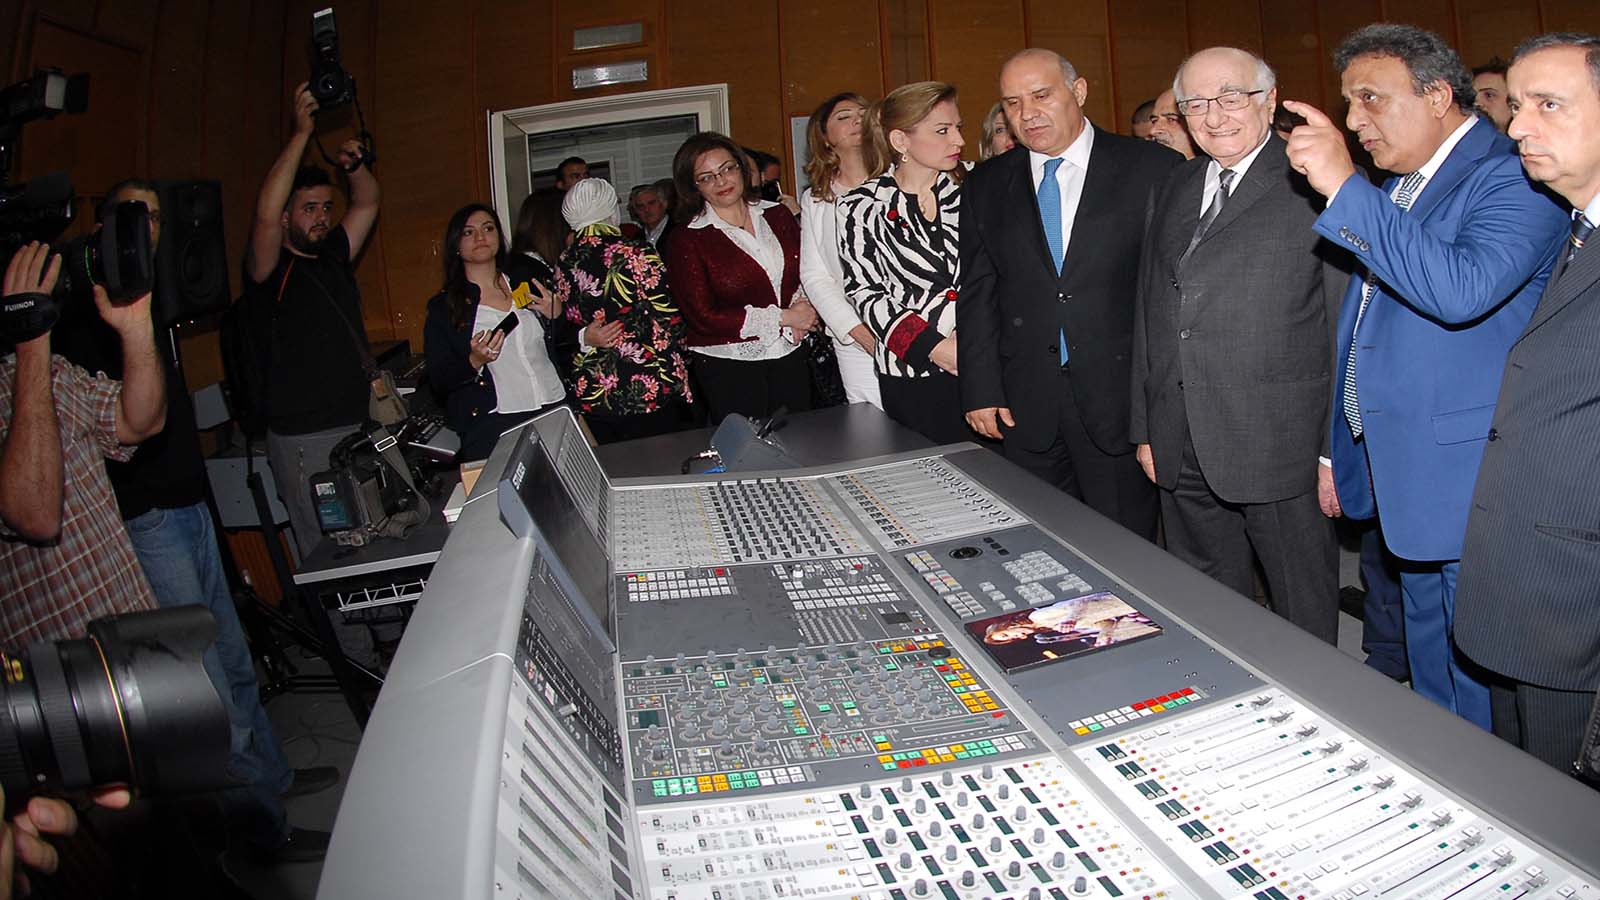 افتتاح استديو فيروز في الاذاعة اللبنانية بحضور وزير الاعلام رمزي جريج(محمود الطويل)